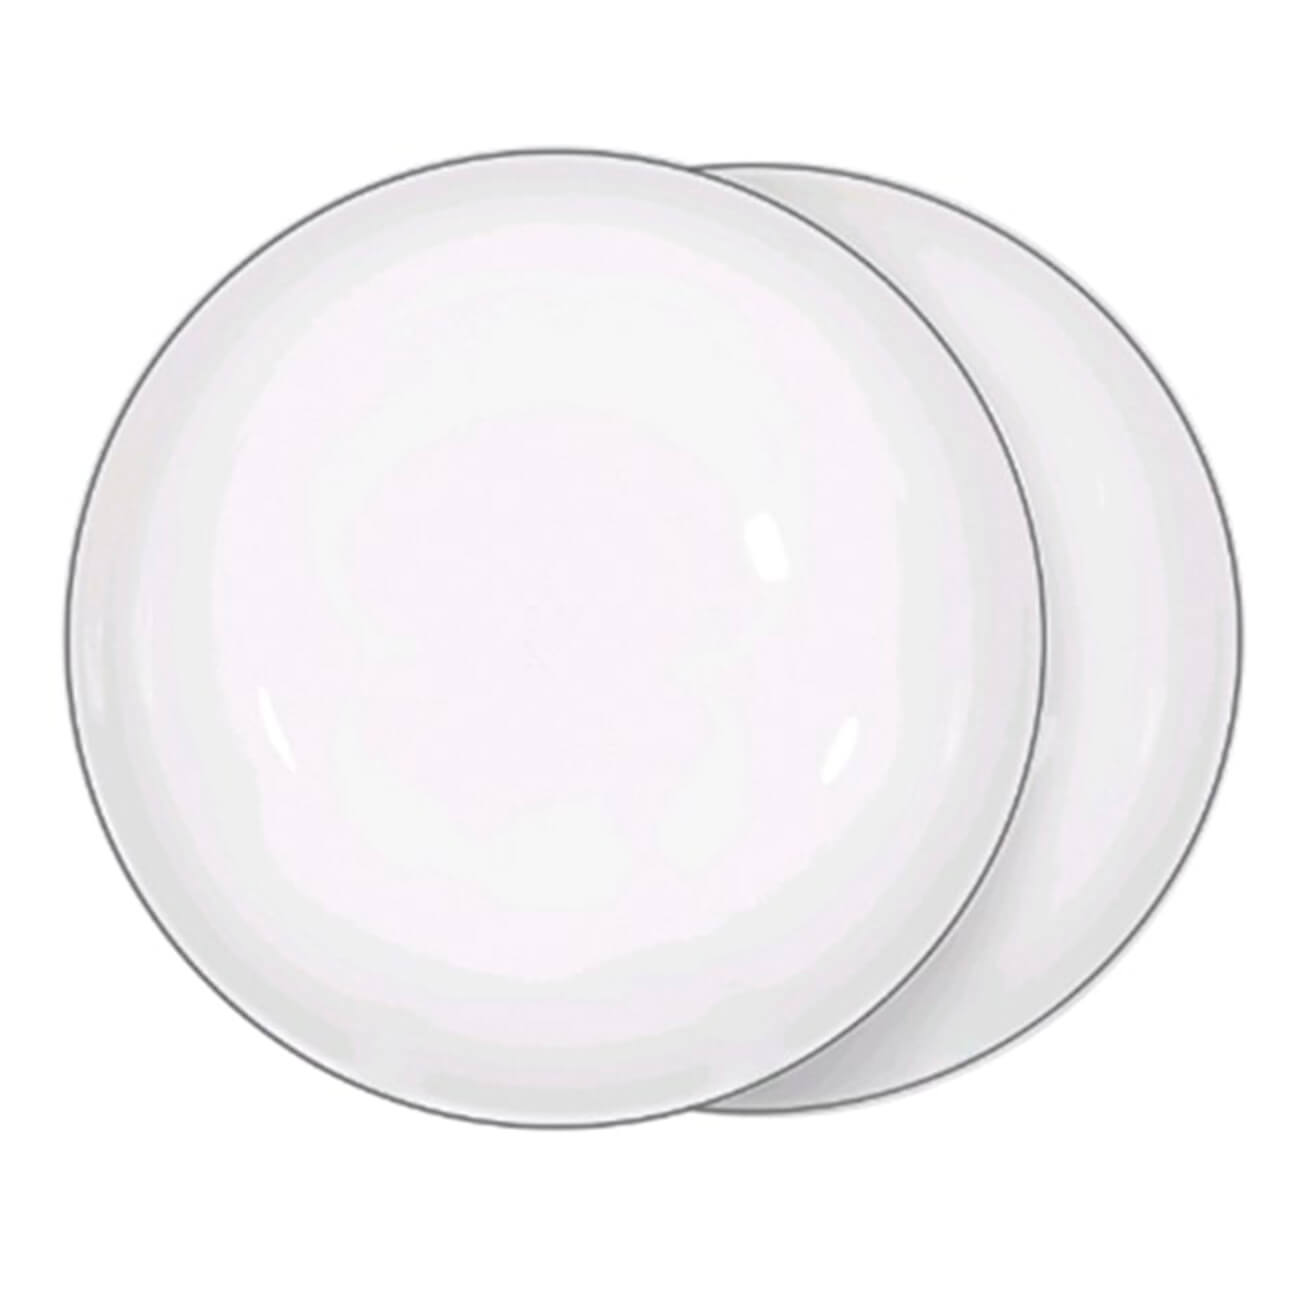 Тарелка суповая, 20х5 см, 2 шт, фарфор F, белая, Ideal silver тарелка суповая noritake английские травы 20 см